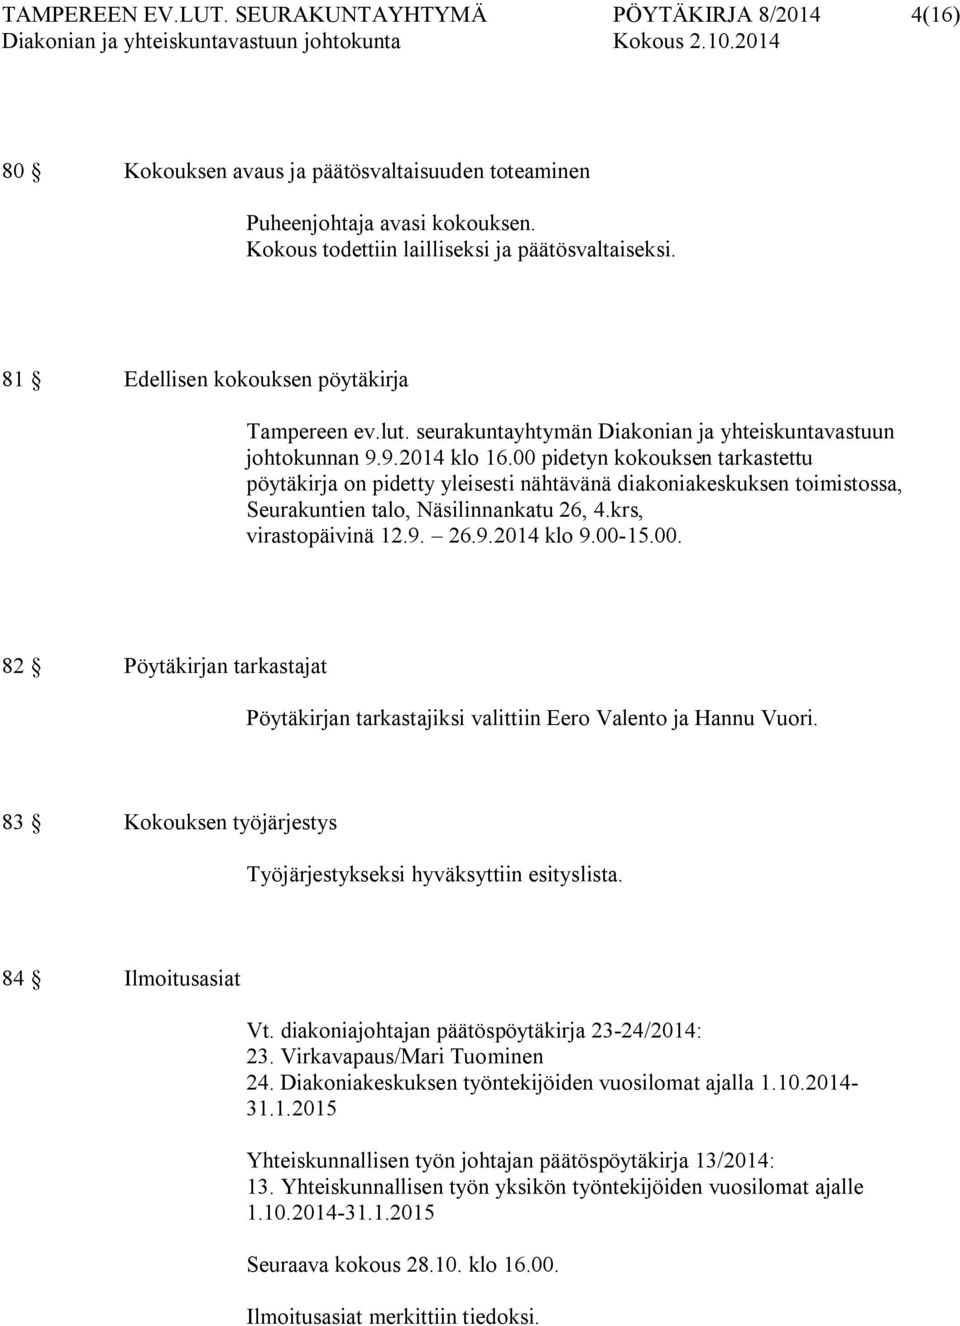 00 pidetyn kokouksen tarkastettu pöytäkirja on pidetty yleisesti nähtävänä diakoniakeskuksen toimistossa, Seurakuntien talo, Näsilinnankatu 26, 4.krs, virastopäivinä 12.9. 26.9.2014 klo 9.00-15.00. 82 Pöytäkirjan tarkastajat Pöytäkirjan tarkastajiksi valittiin Eero Valento ja Hannu Vuori.